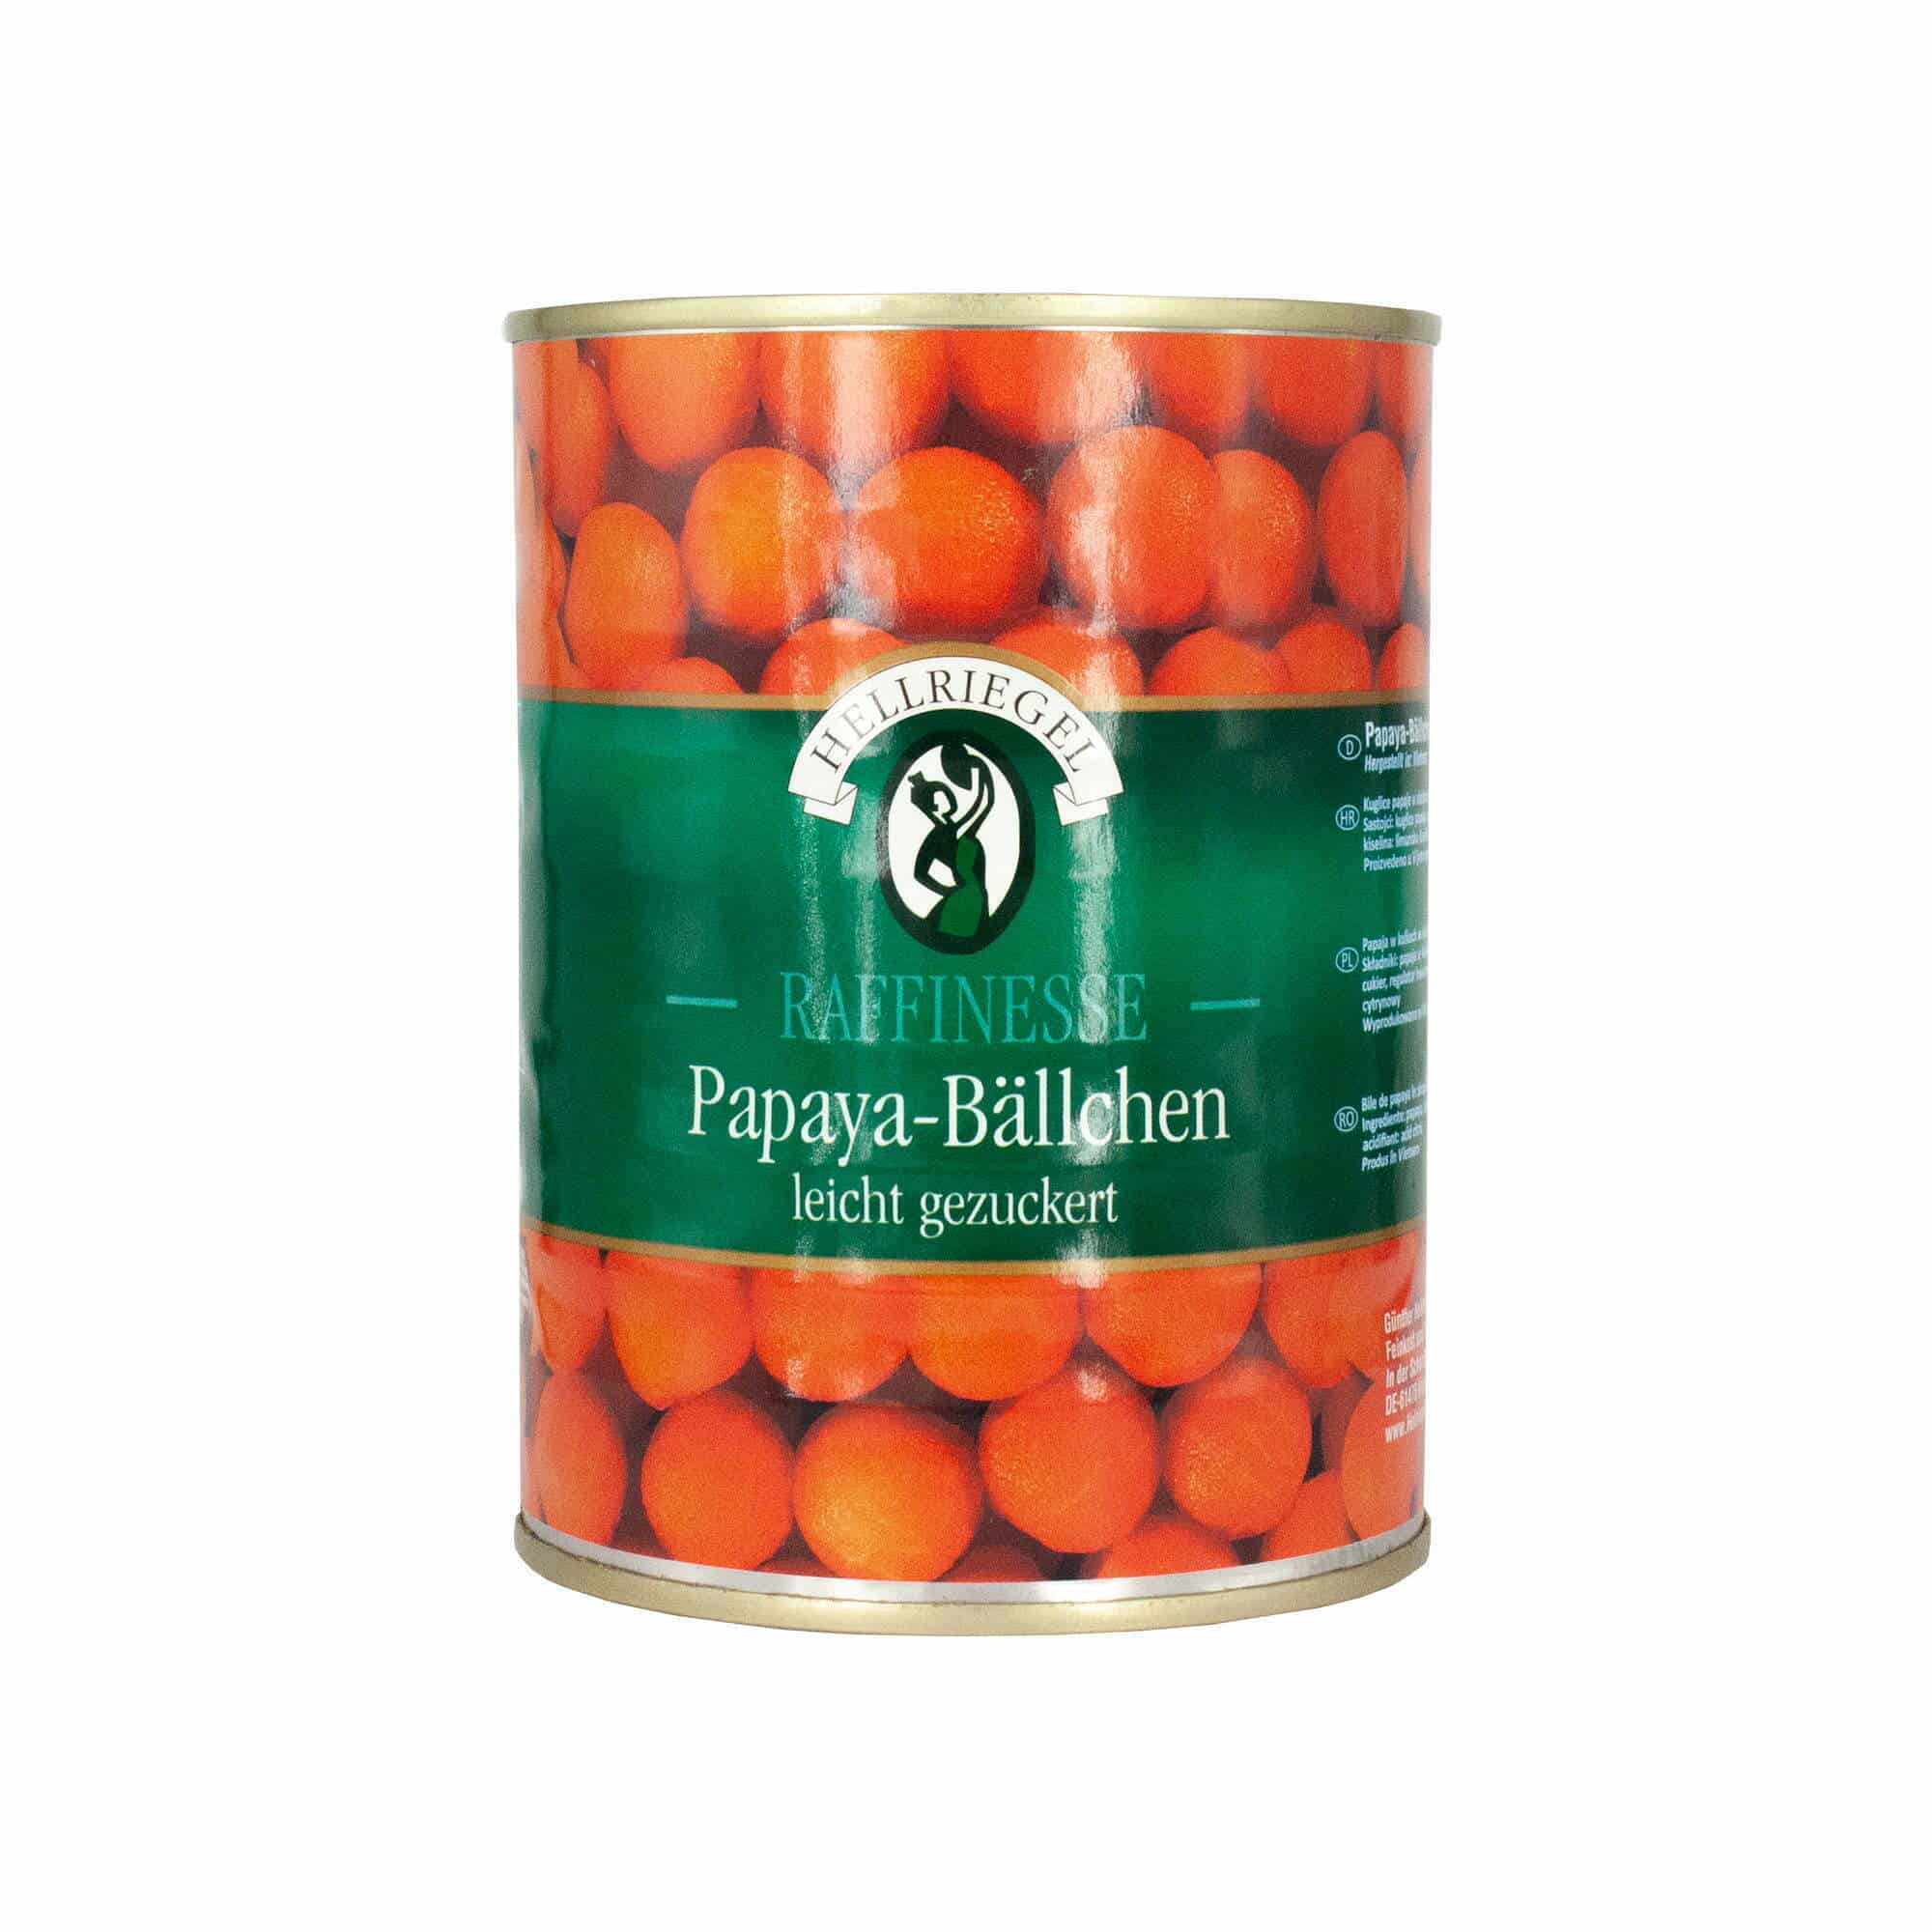 Hellriegel Raffinesse Papaya-Bällchen